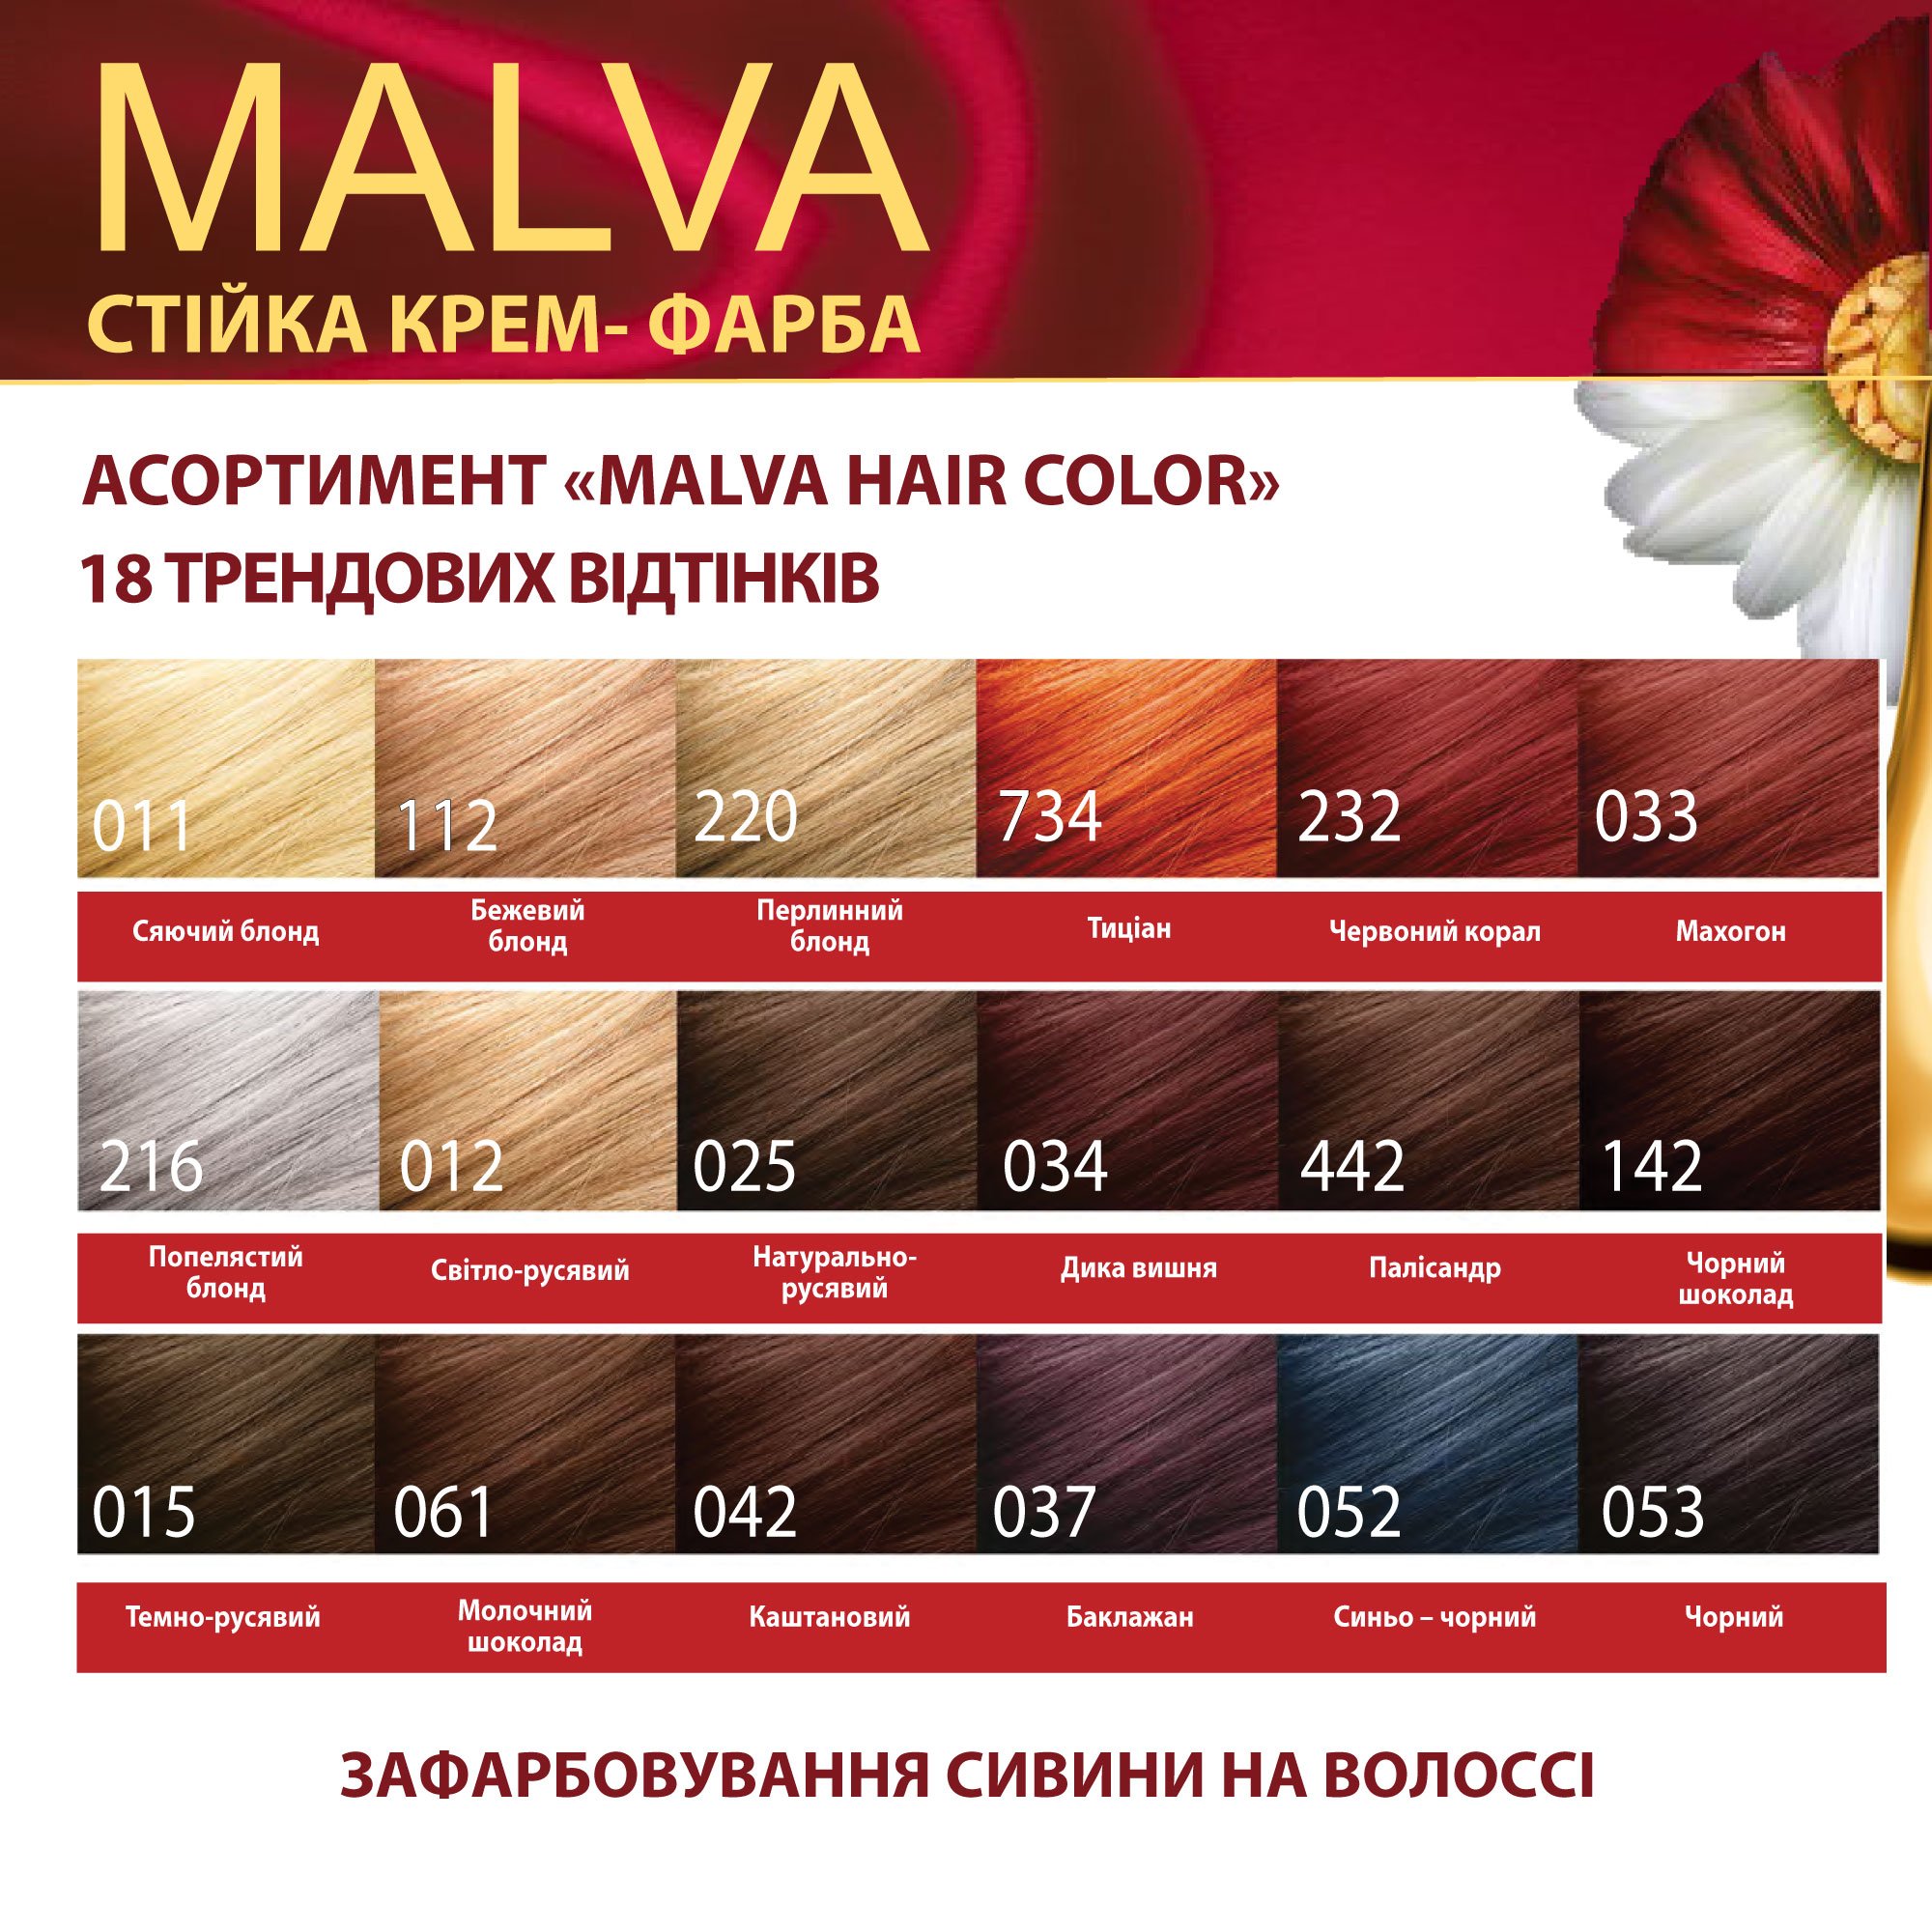 Крем-фарба для волосся Acme Color Malva, відтінок 037 (Баклажан), 95 мл - фото 6